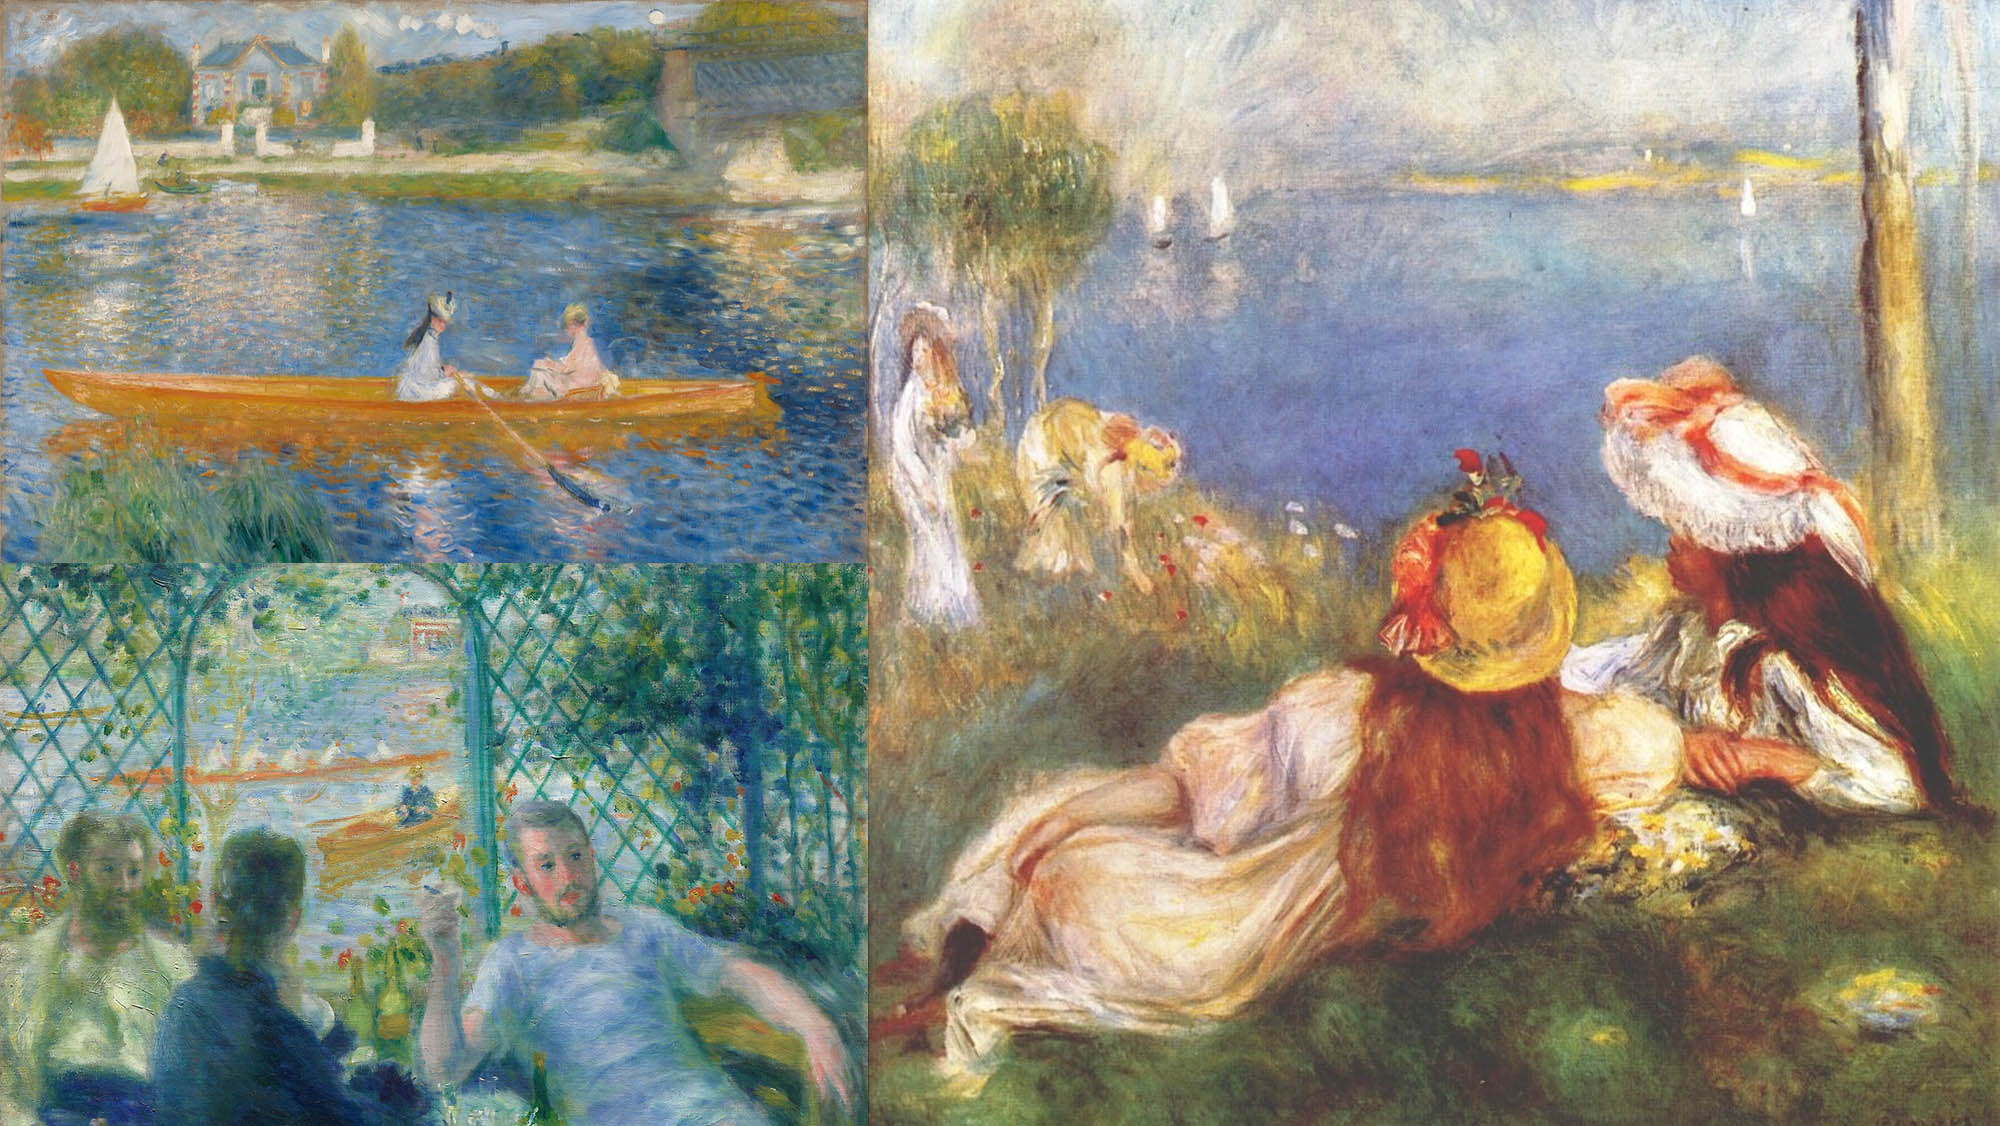 Pierre-Auguste Renoir paintings by the seashore illustrating JOAN SEED new artwork